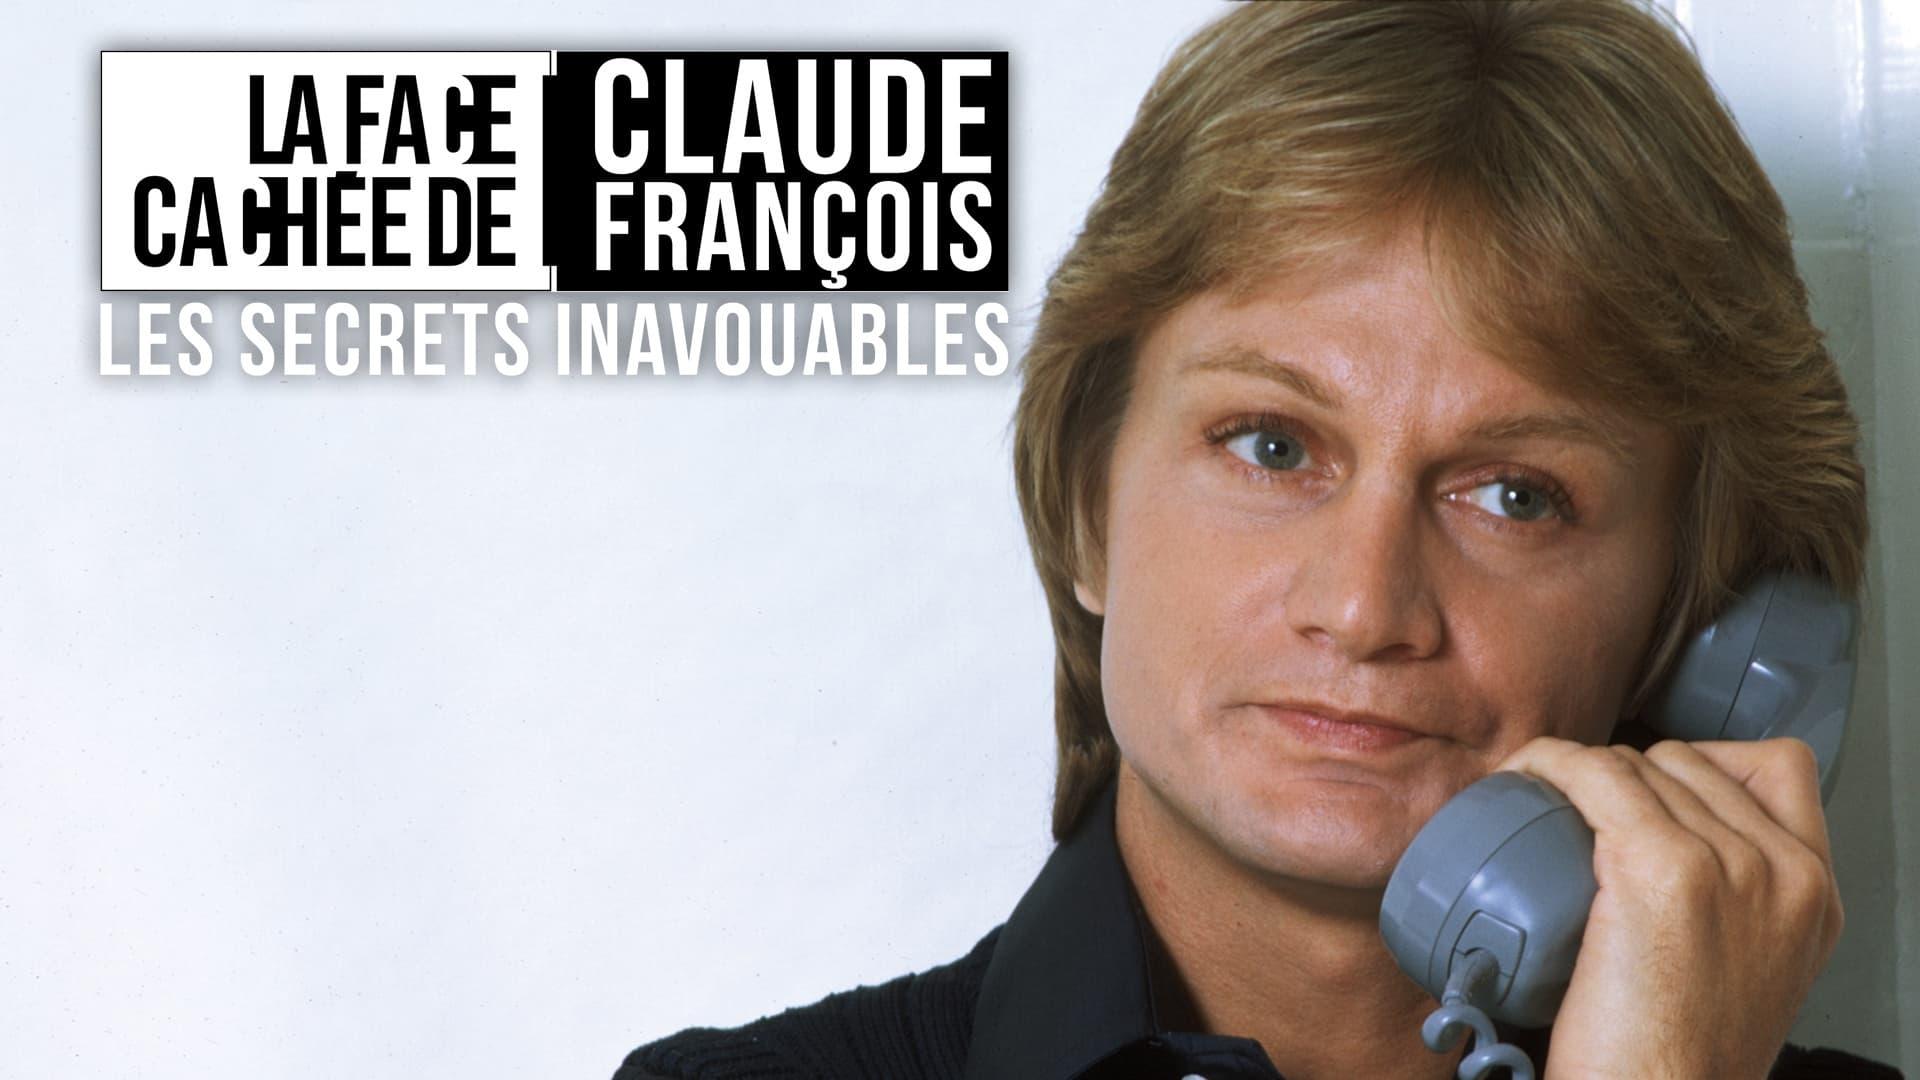 Claude François, Les Secrets Inavouables backdrop